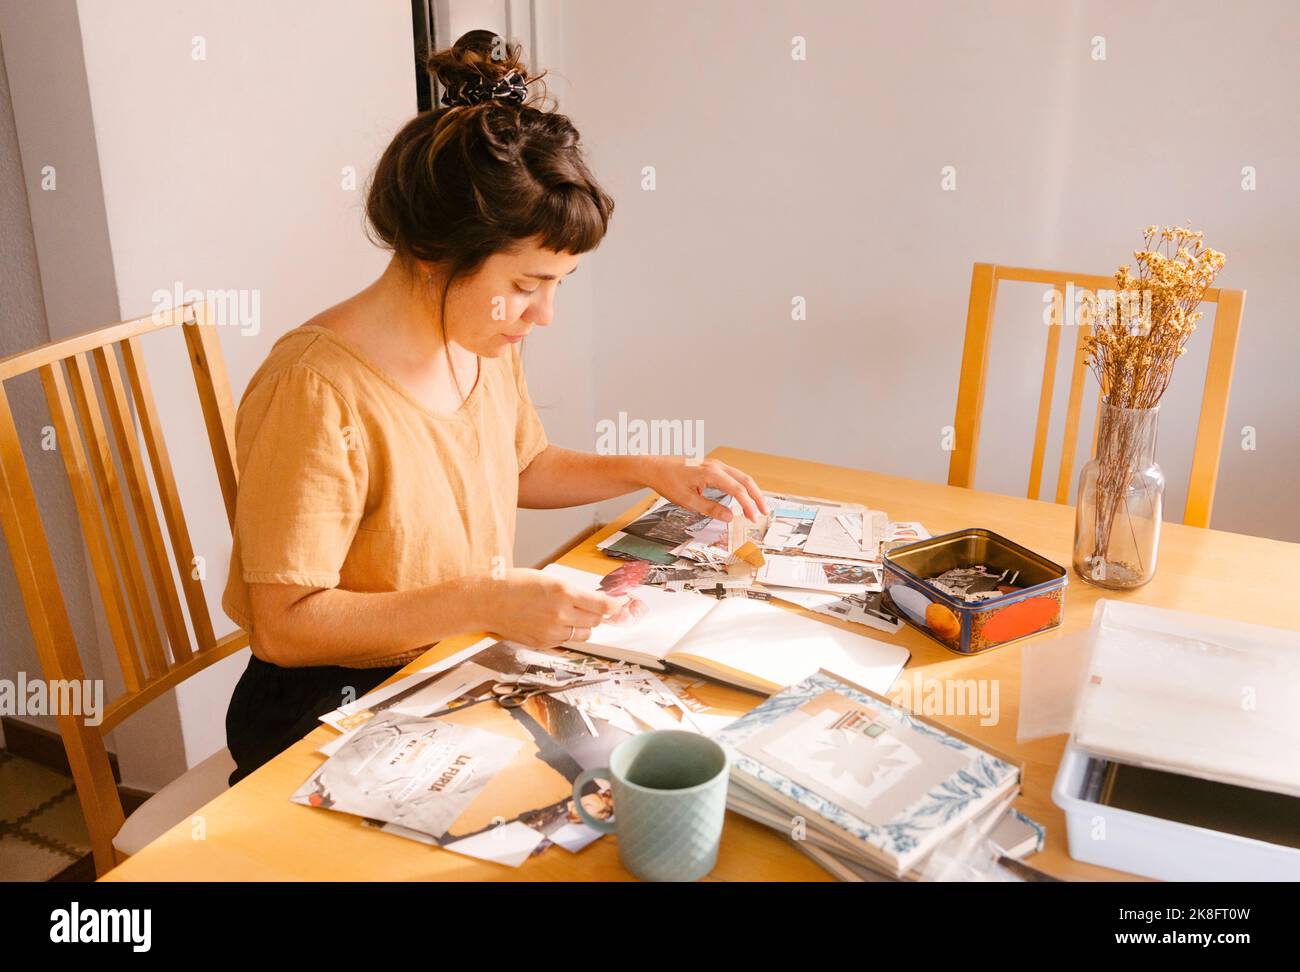 Freiberuflicher Mitarbeiter, der zu Hause am Schreibtisch Papierausschnitte im Buch arrangiert Stockfoto